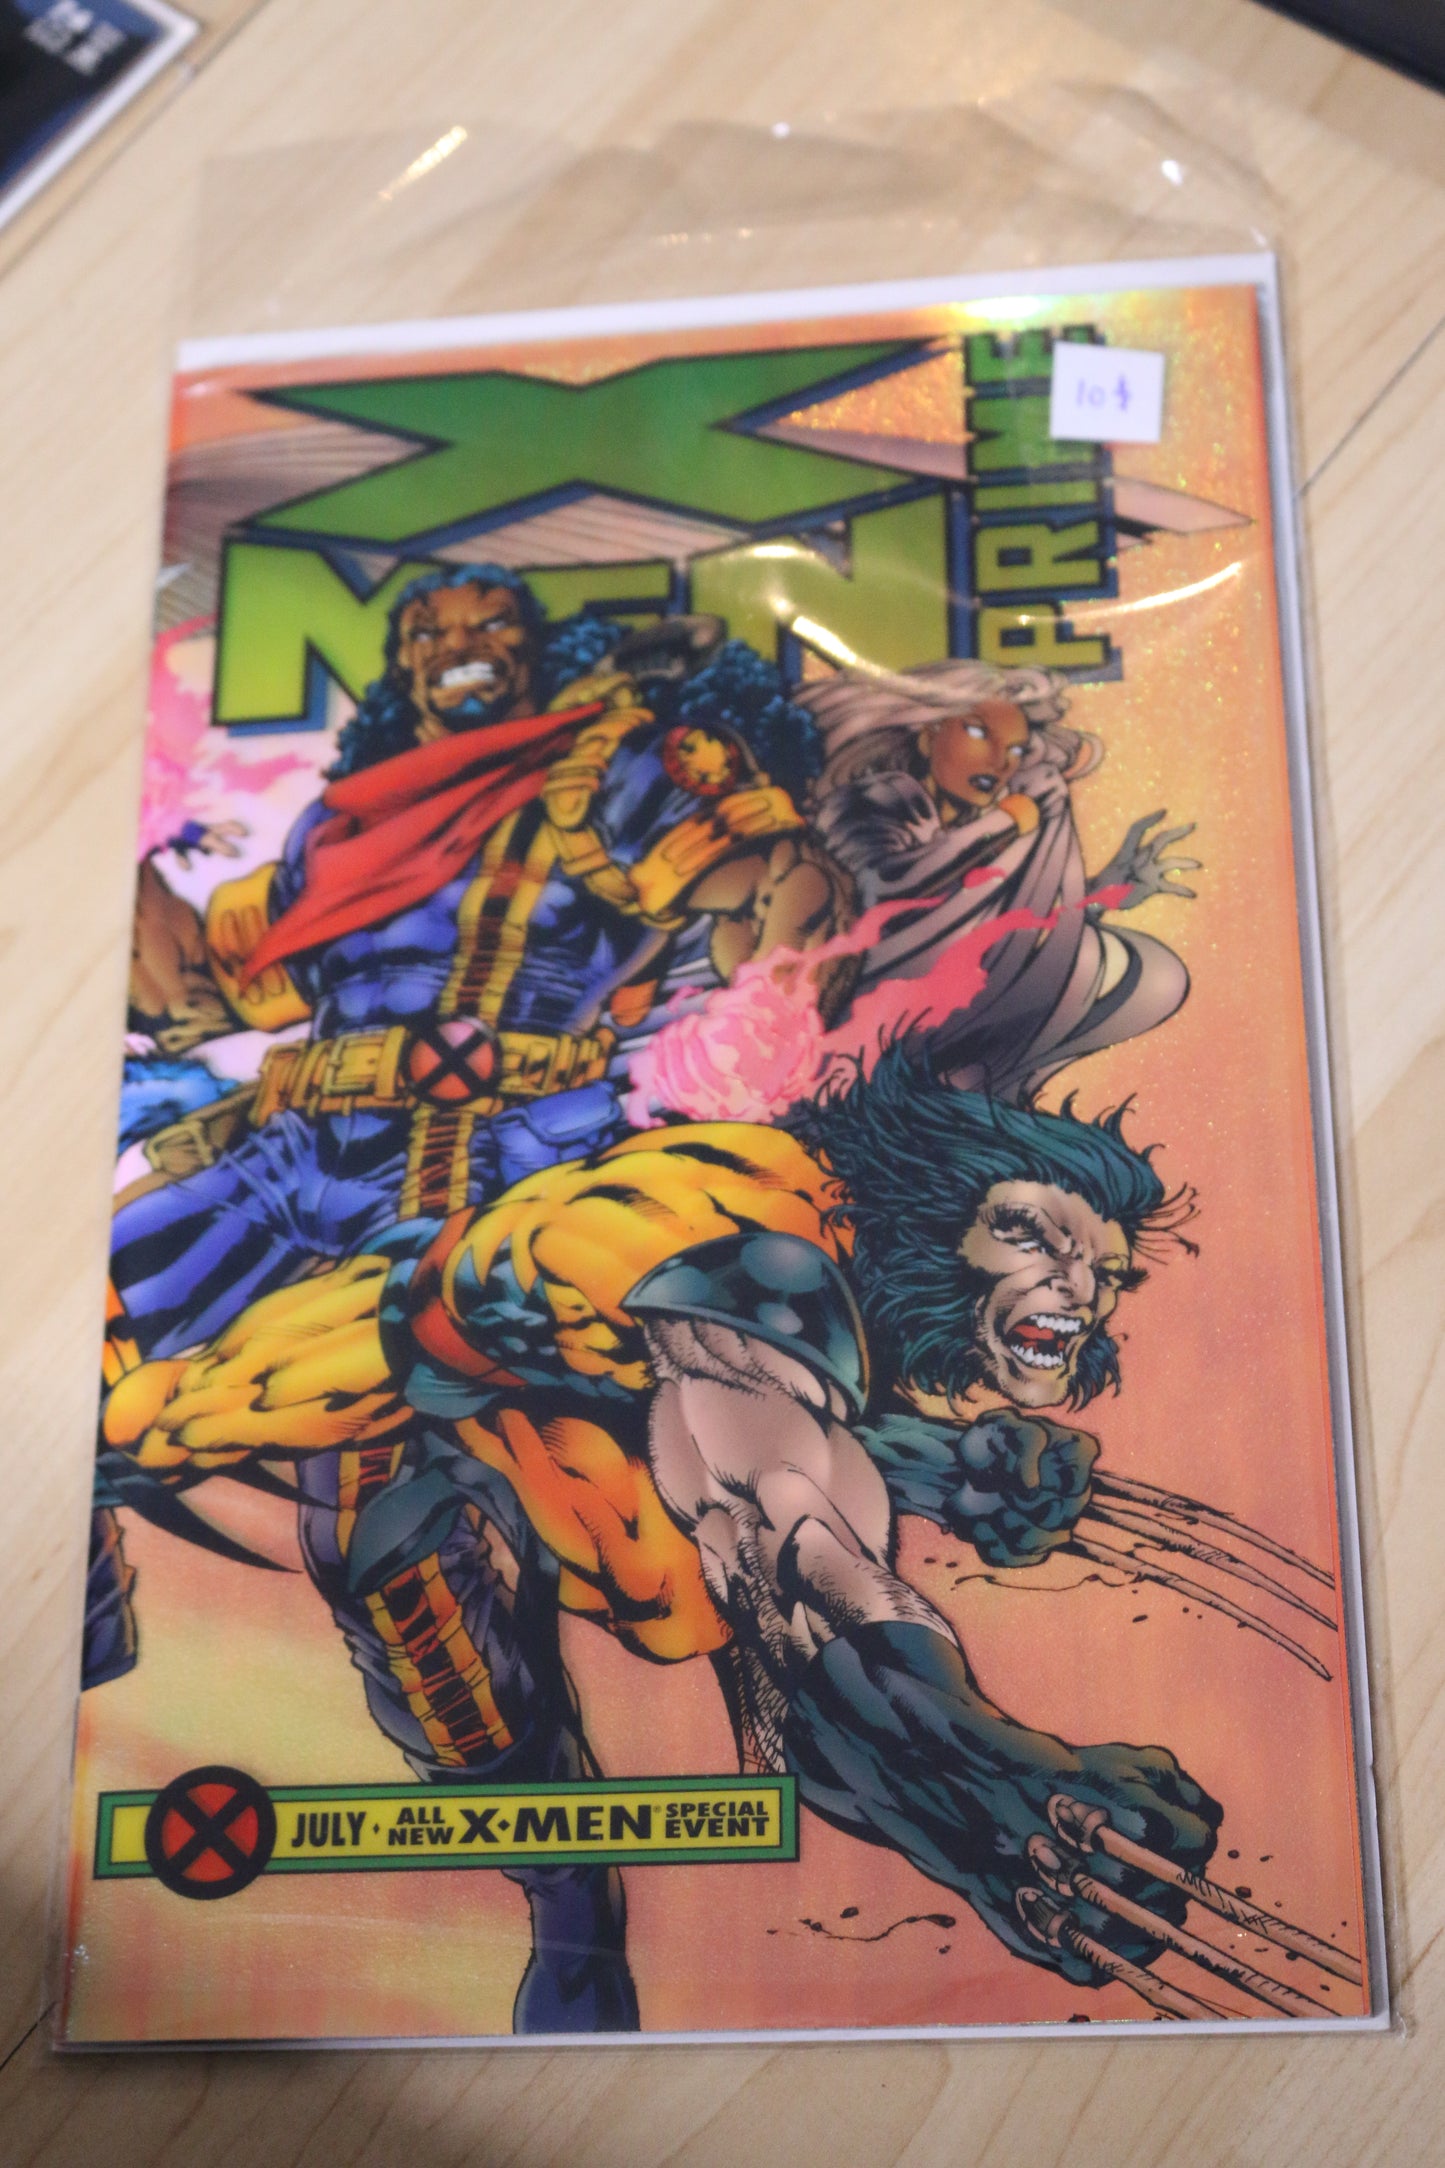 Marvel X-Men Prime #1 Issue July 1995 All New X-Men